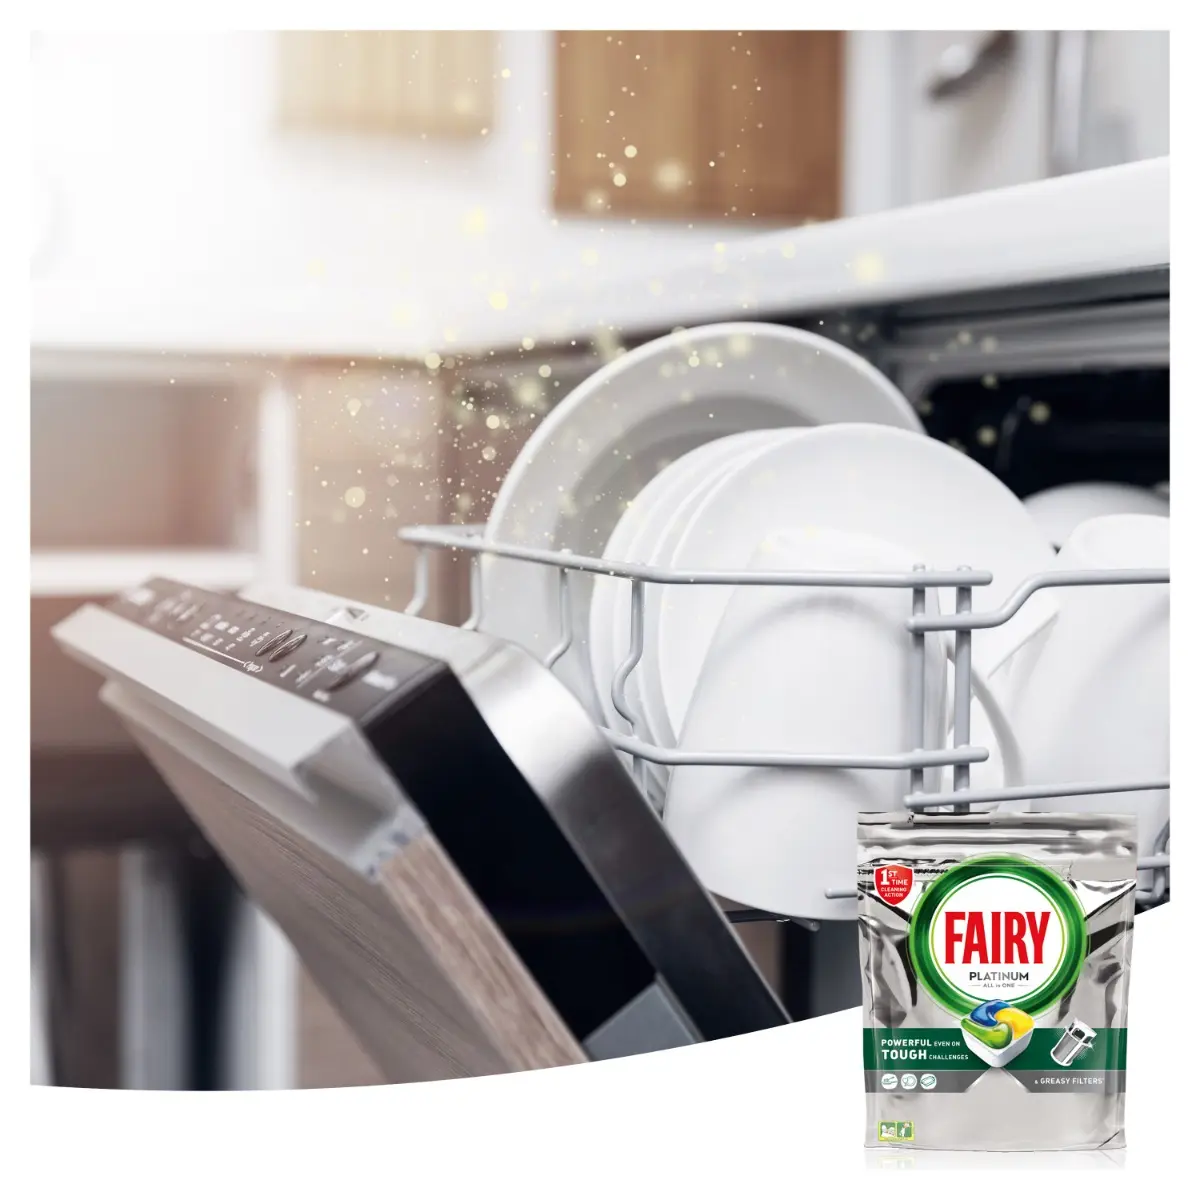 Detergent Fairy Platinum All in One pentru masina de spalat vase, 18 spalari